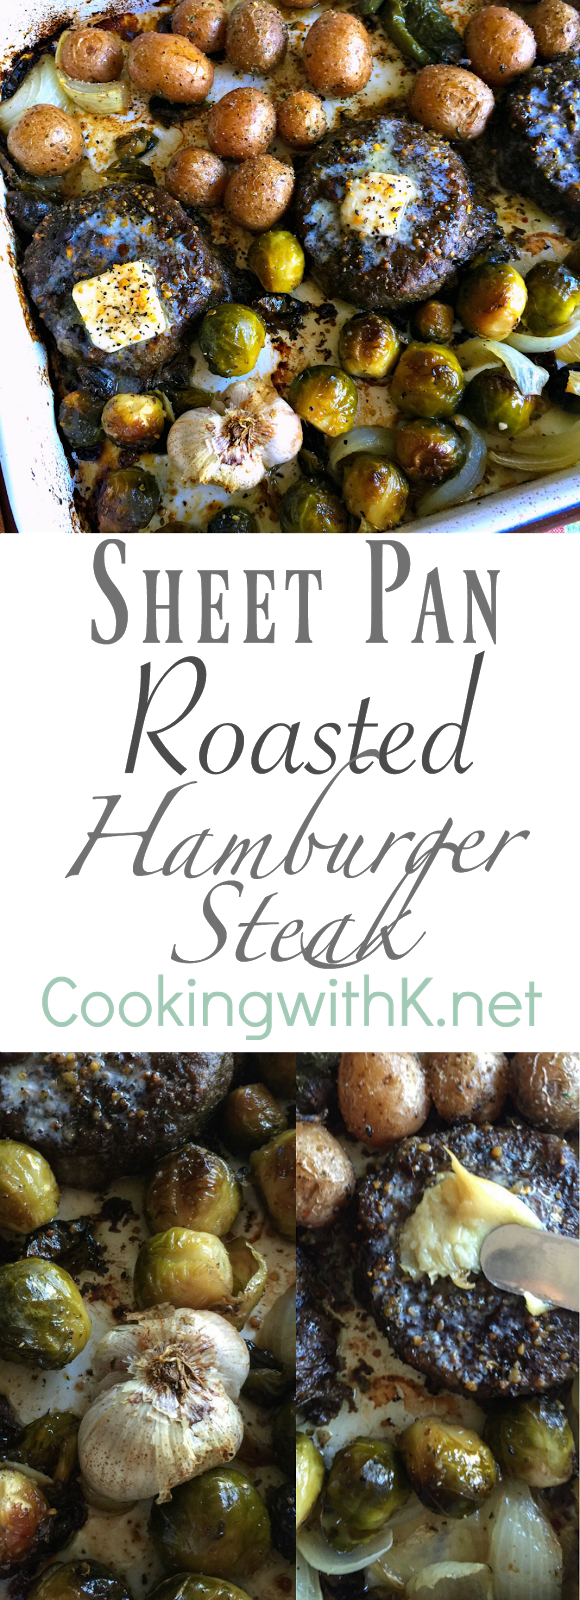 Sheet Pan Hamburgers - The Recipe Life